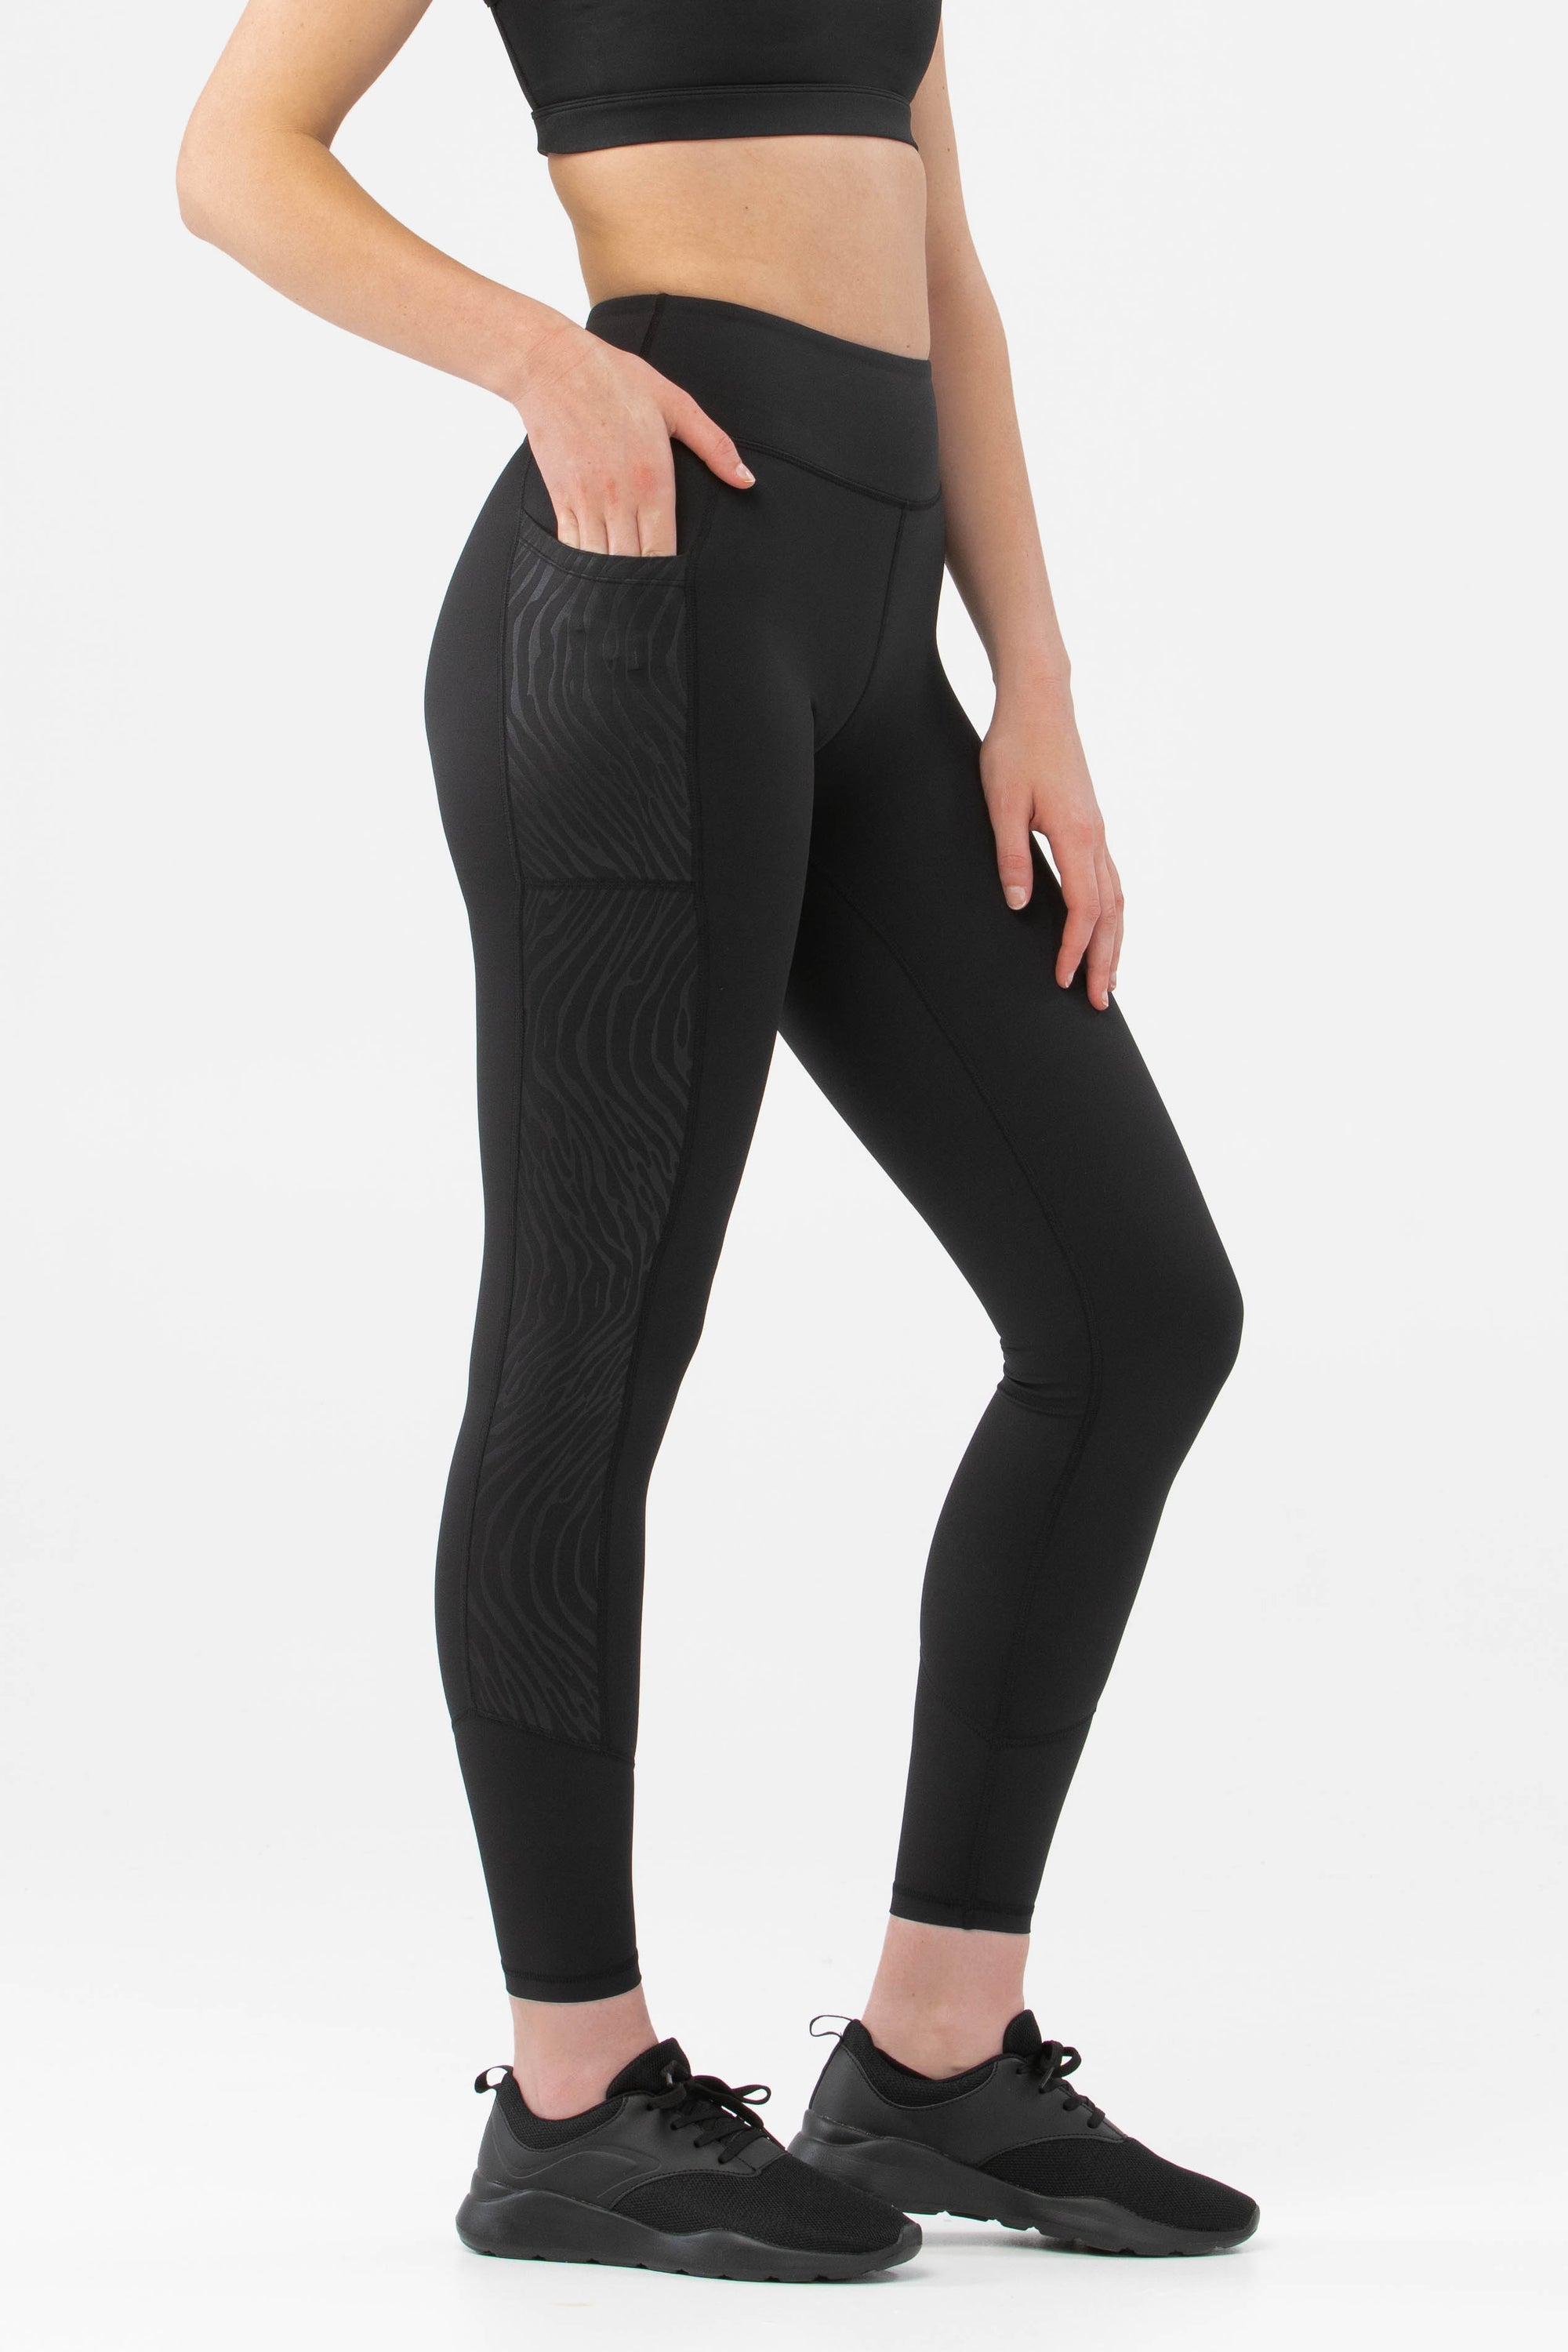 High Waisted Womens Leggings - 100% squat proof | fitphyt leggings